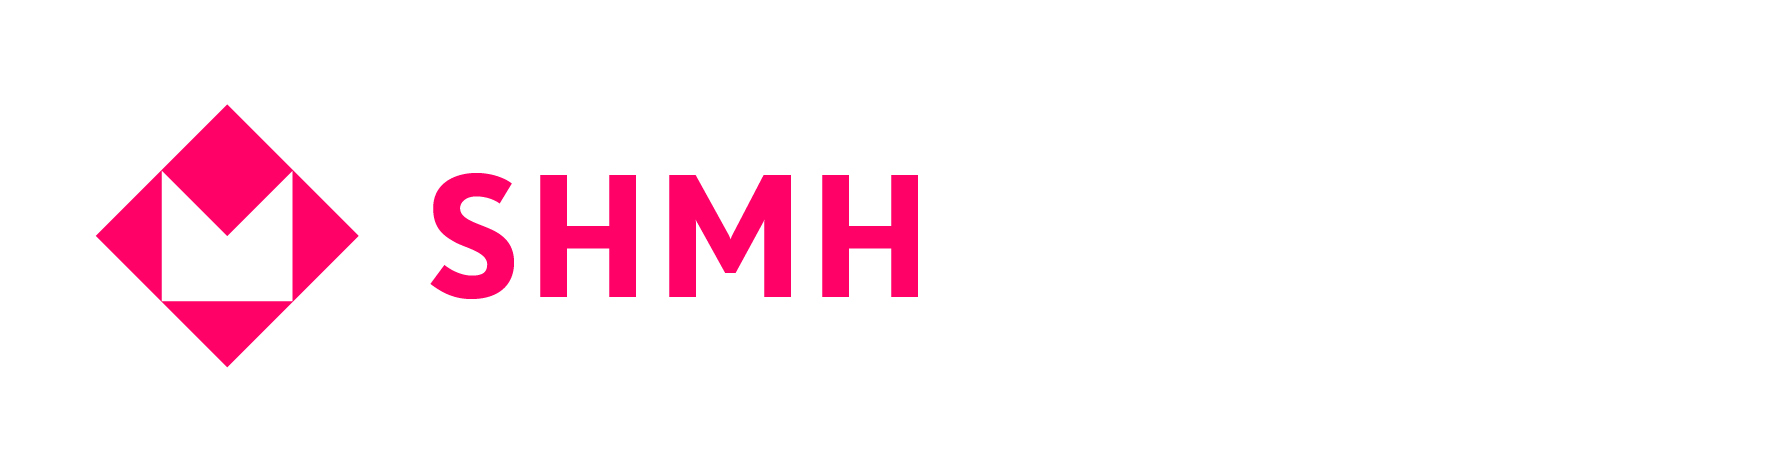 SHMH 18 Logo SHMH 150x40